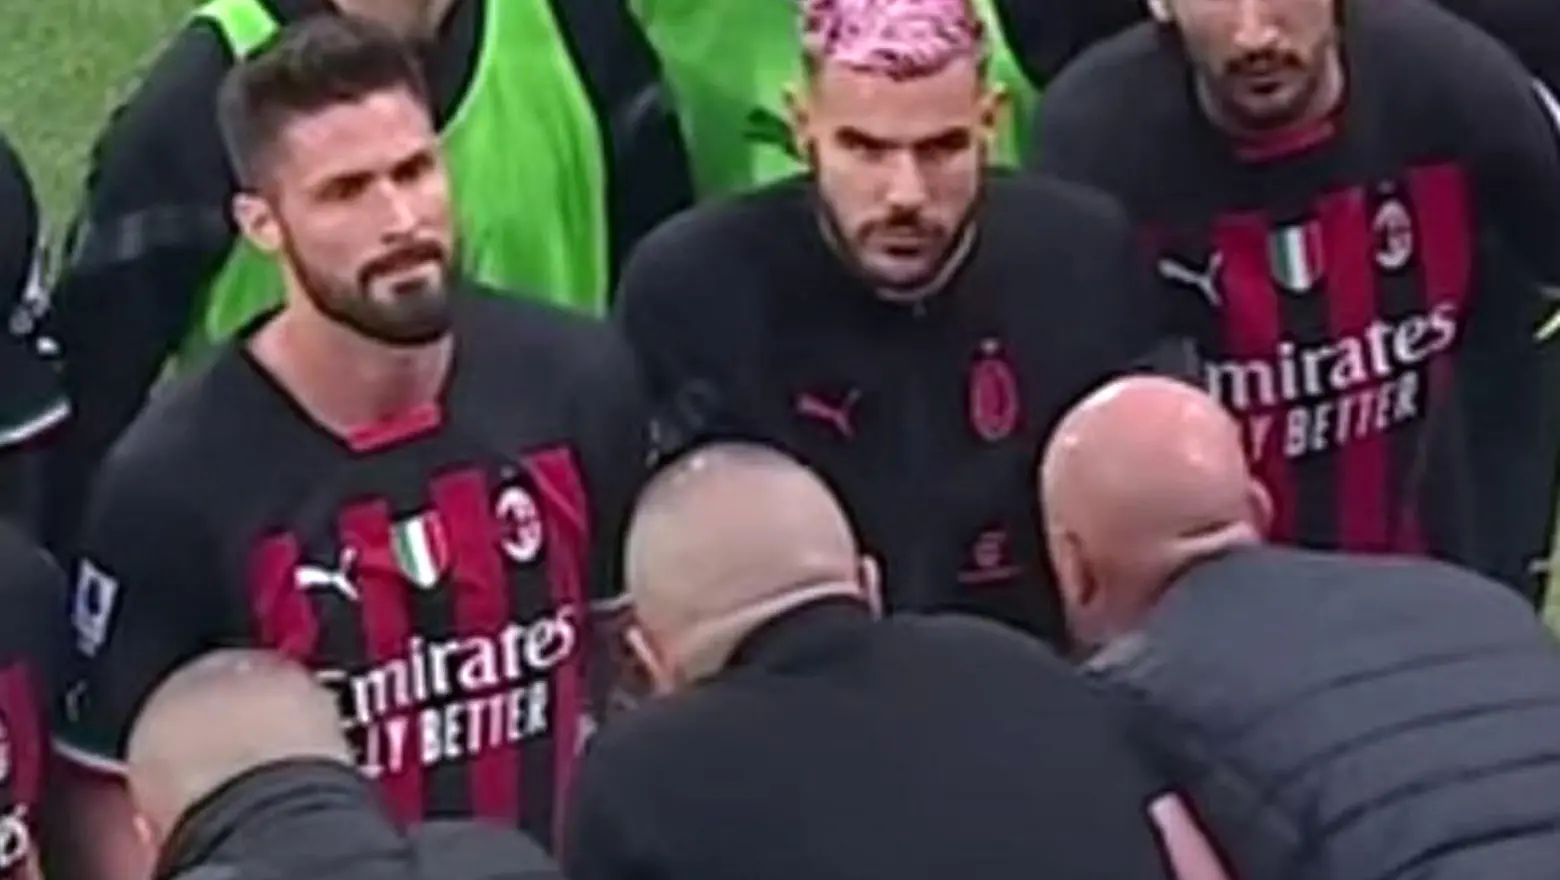 Il faccia a faccia fra Milan e tifosi così come ripreso in un video circolato sui social